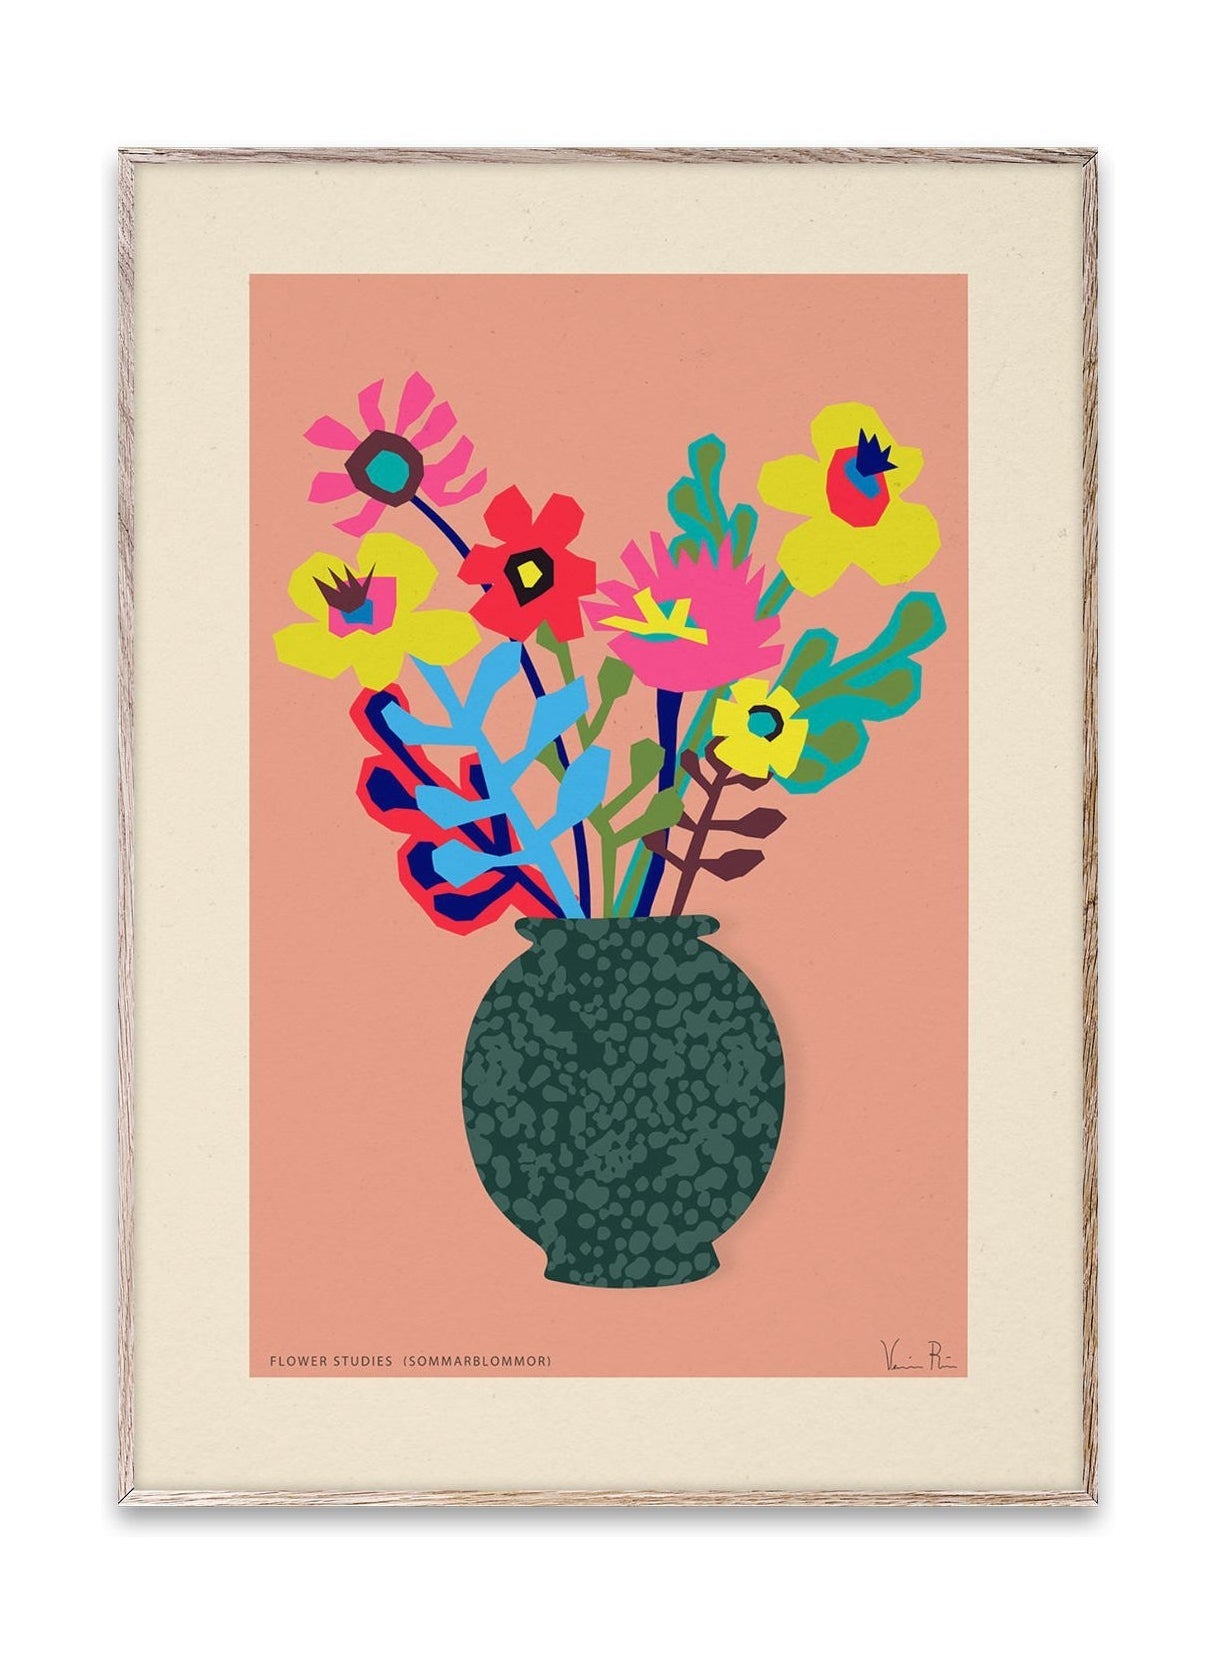 Paper Collective Flower Studies 02 (Sommarblommar) affisch, 30x40 cm